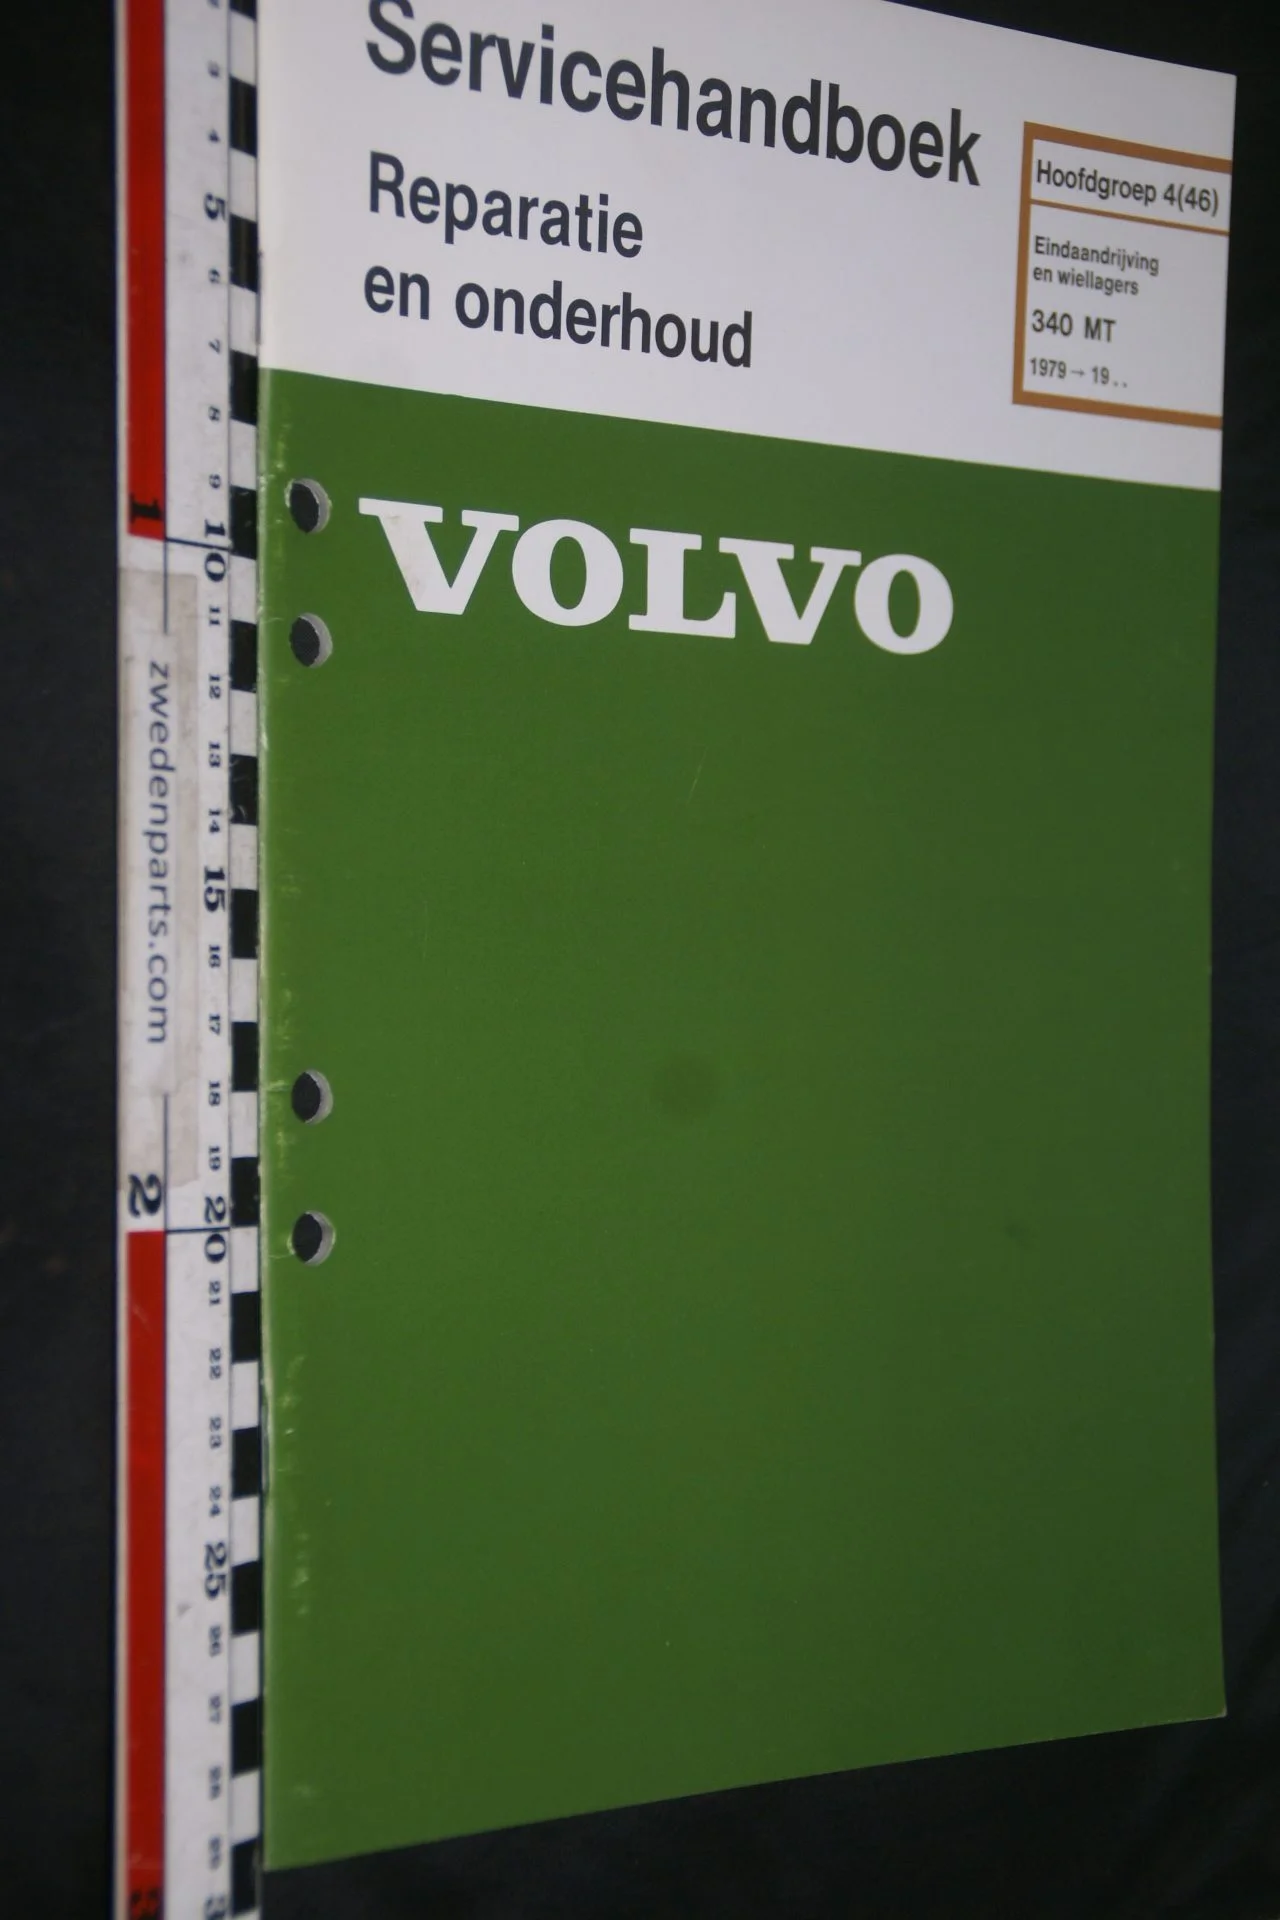 DSC07223 1979 origineel Volvo 340 MT  servicehandboek  4(46) eindaandrijving 1 van 800 TP 12436-2